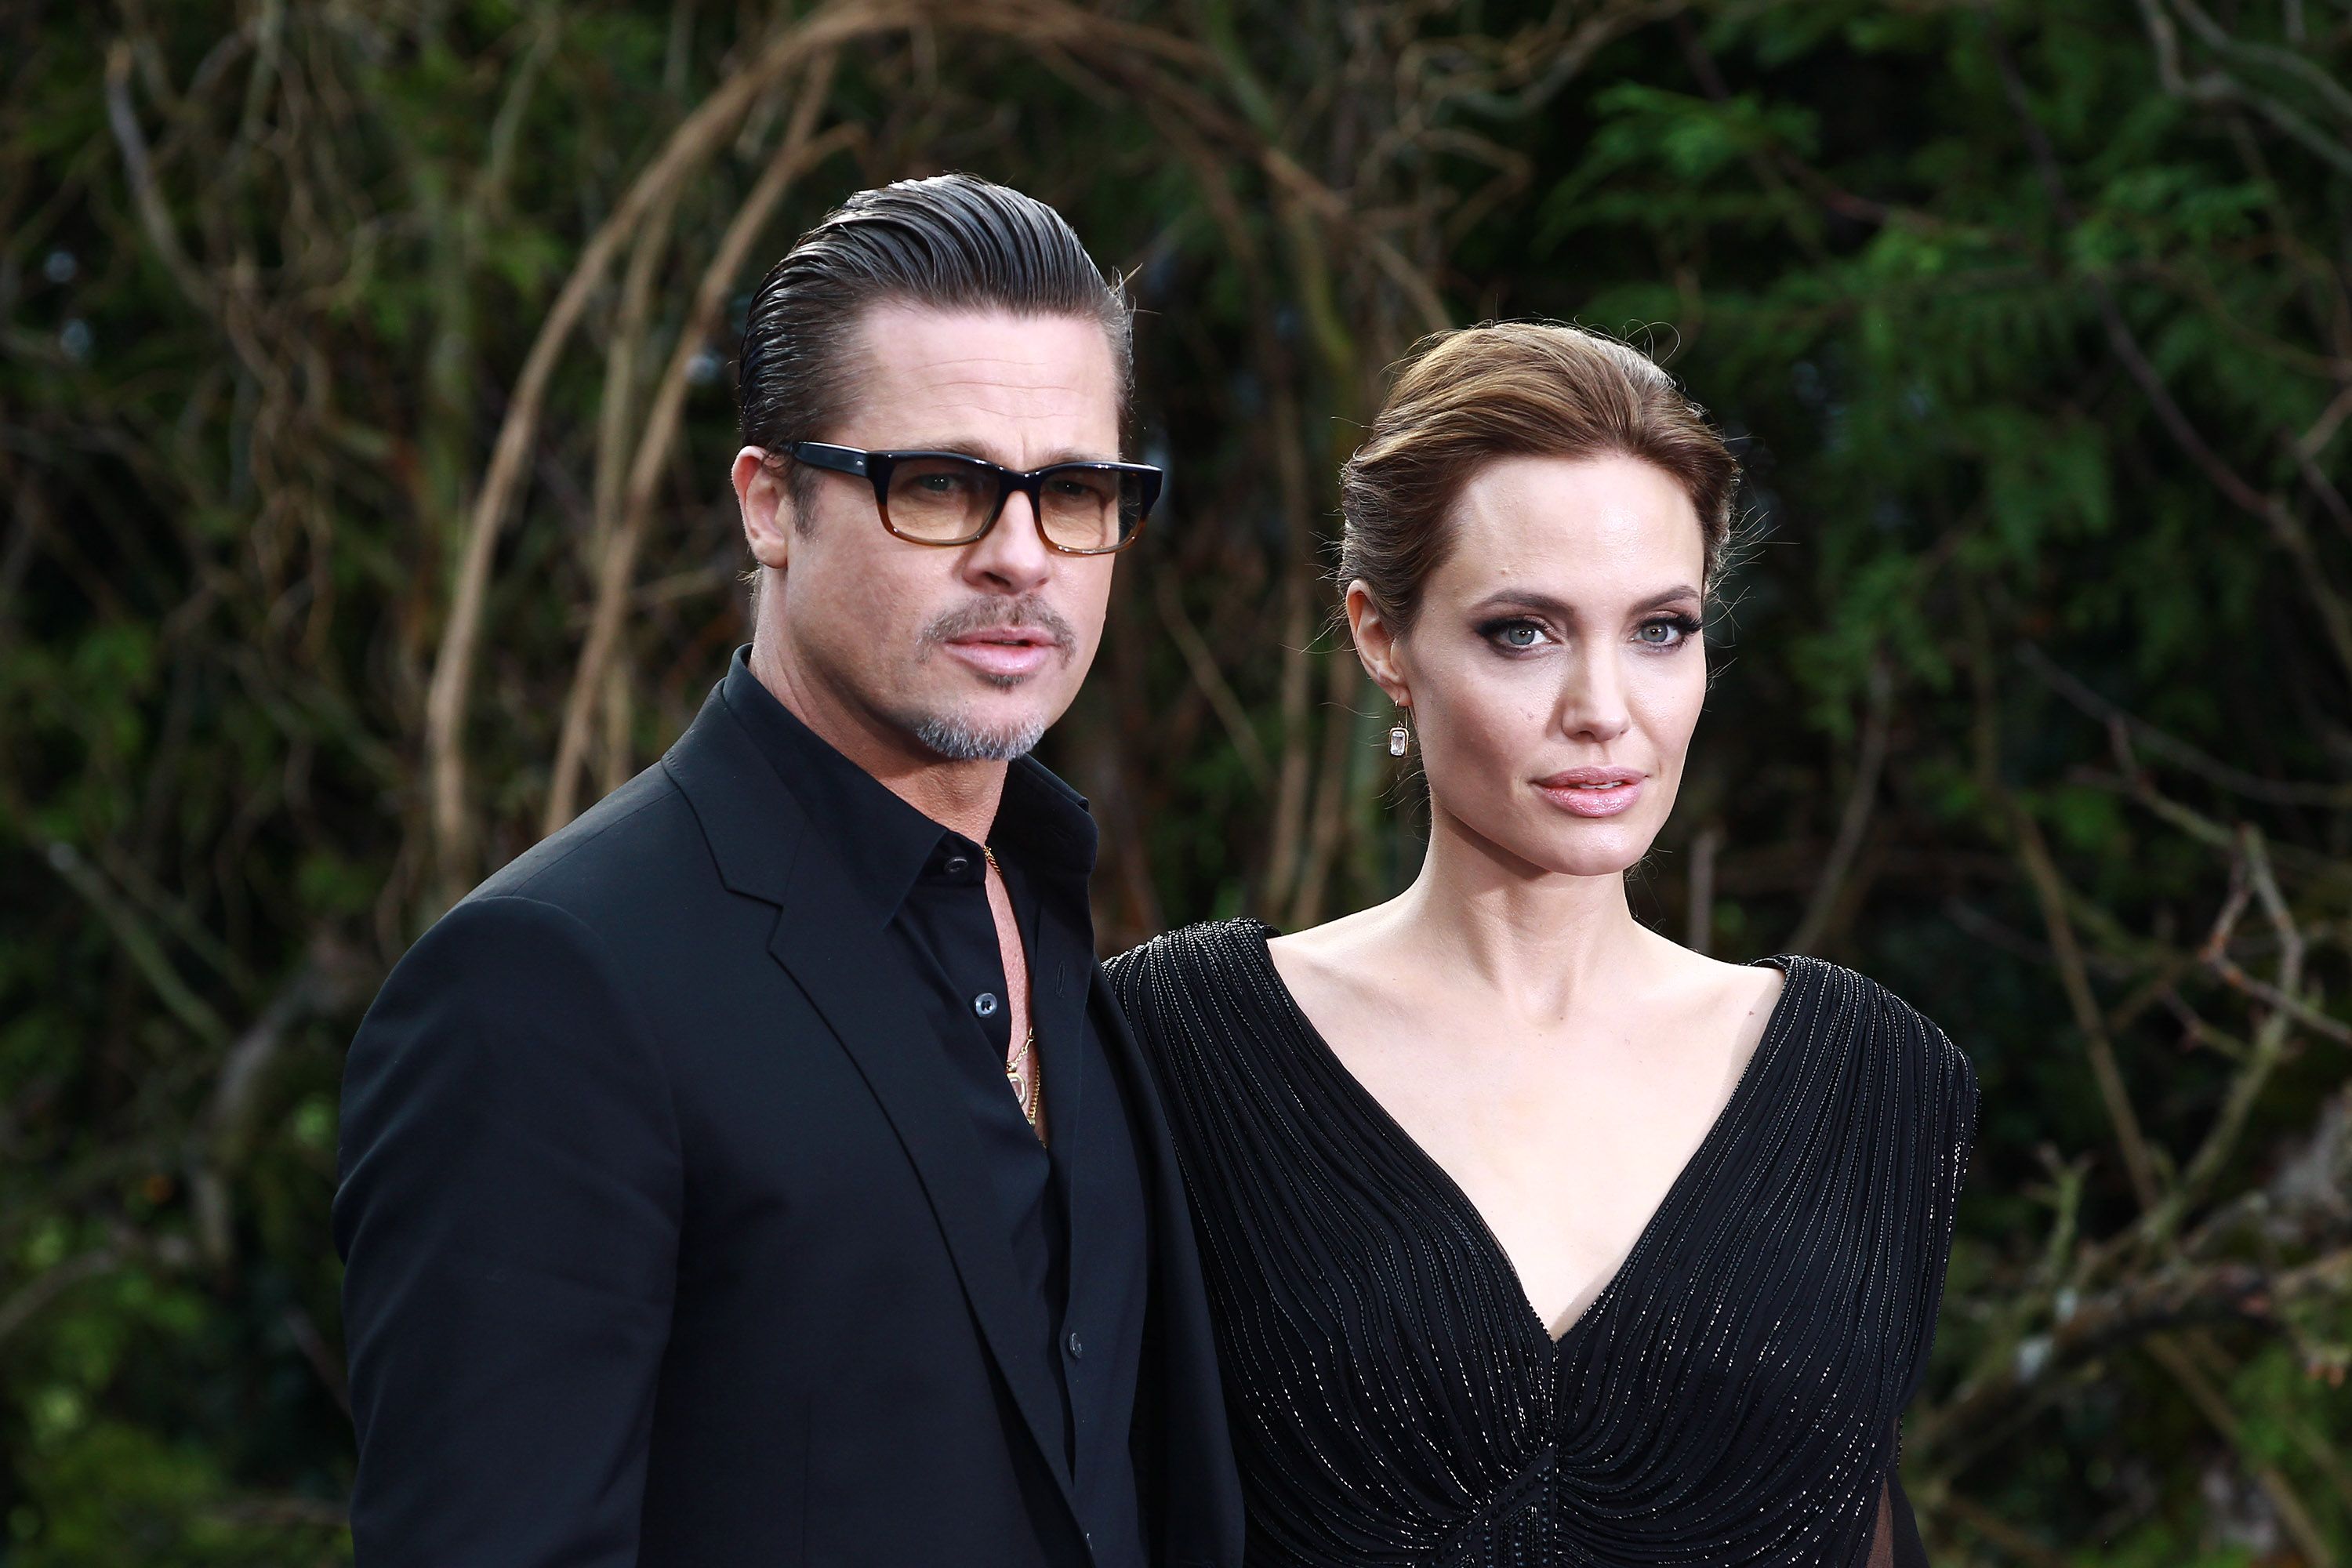 Chan urrainn dha Brad Pitt agus Angelina Jolie co-dhùnadh cò a gheibh Chateau Miraval san sgaradh aca